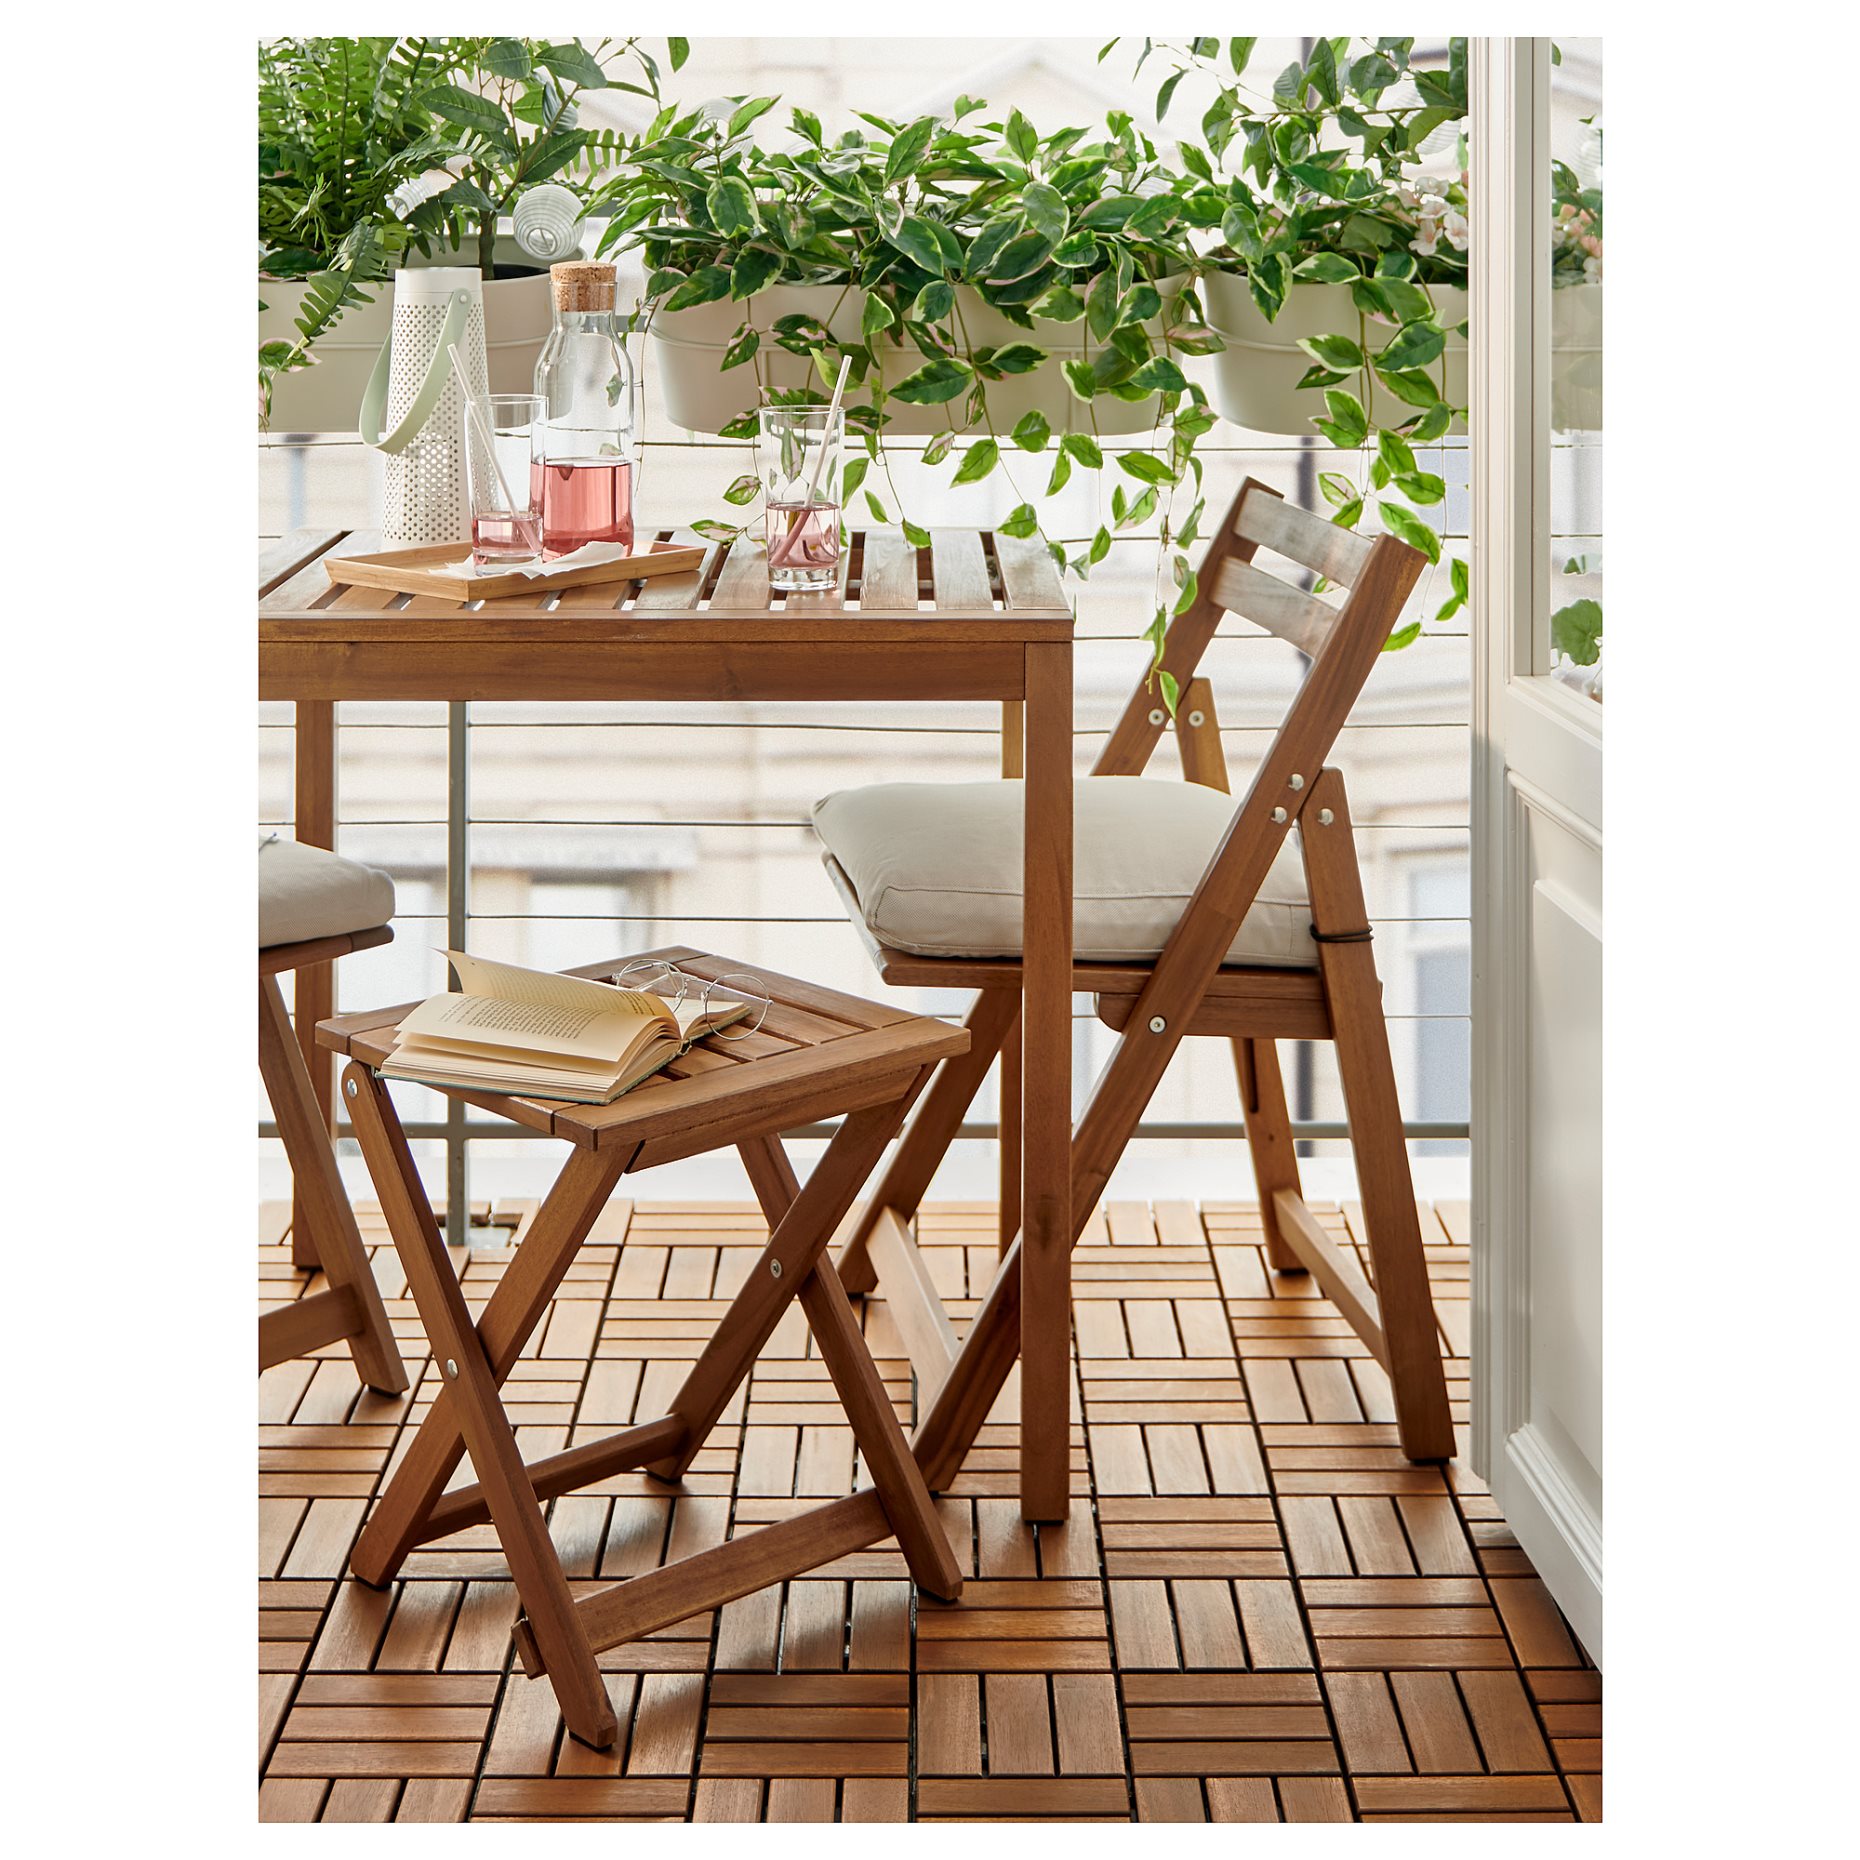 NÄMMARÖ, stool/foldable/outdoor, 37x45 cm, 705.103.00